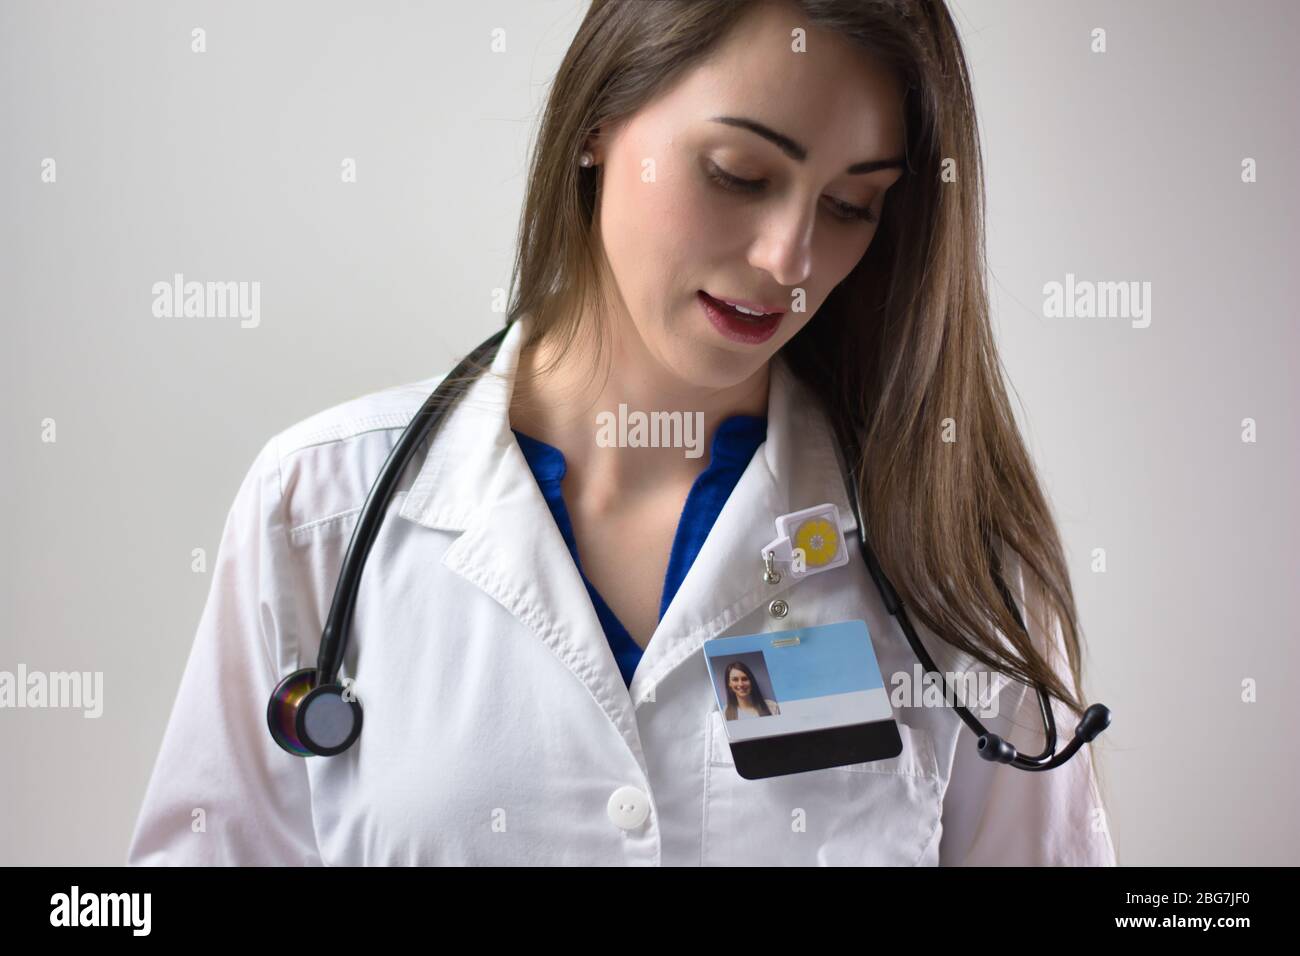 Médecin féminin sur fond gris. Manteau blanc, stéthoscope, badge visible. Médecin souriant Banque D'Images